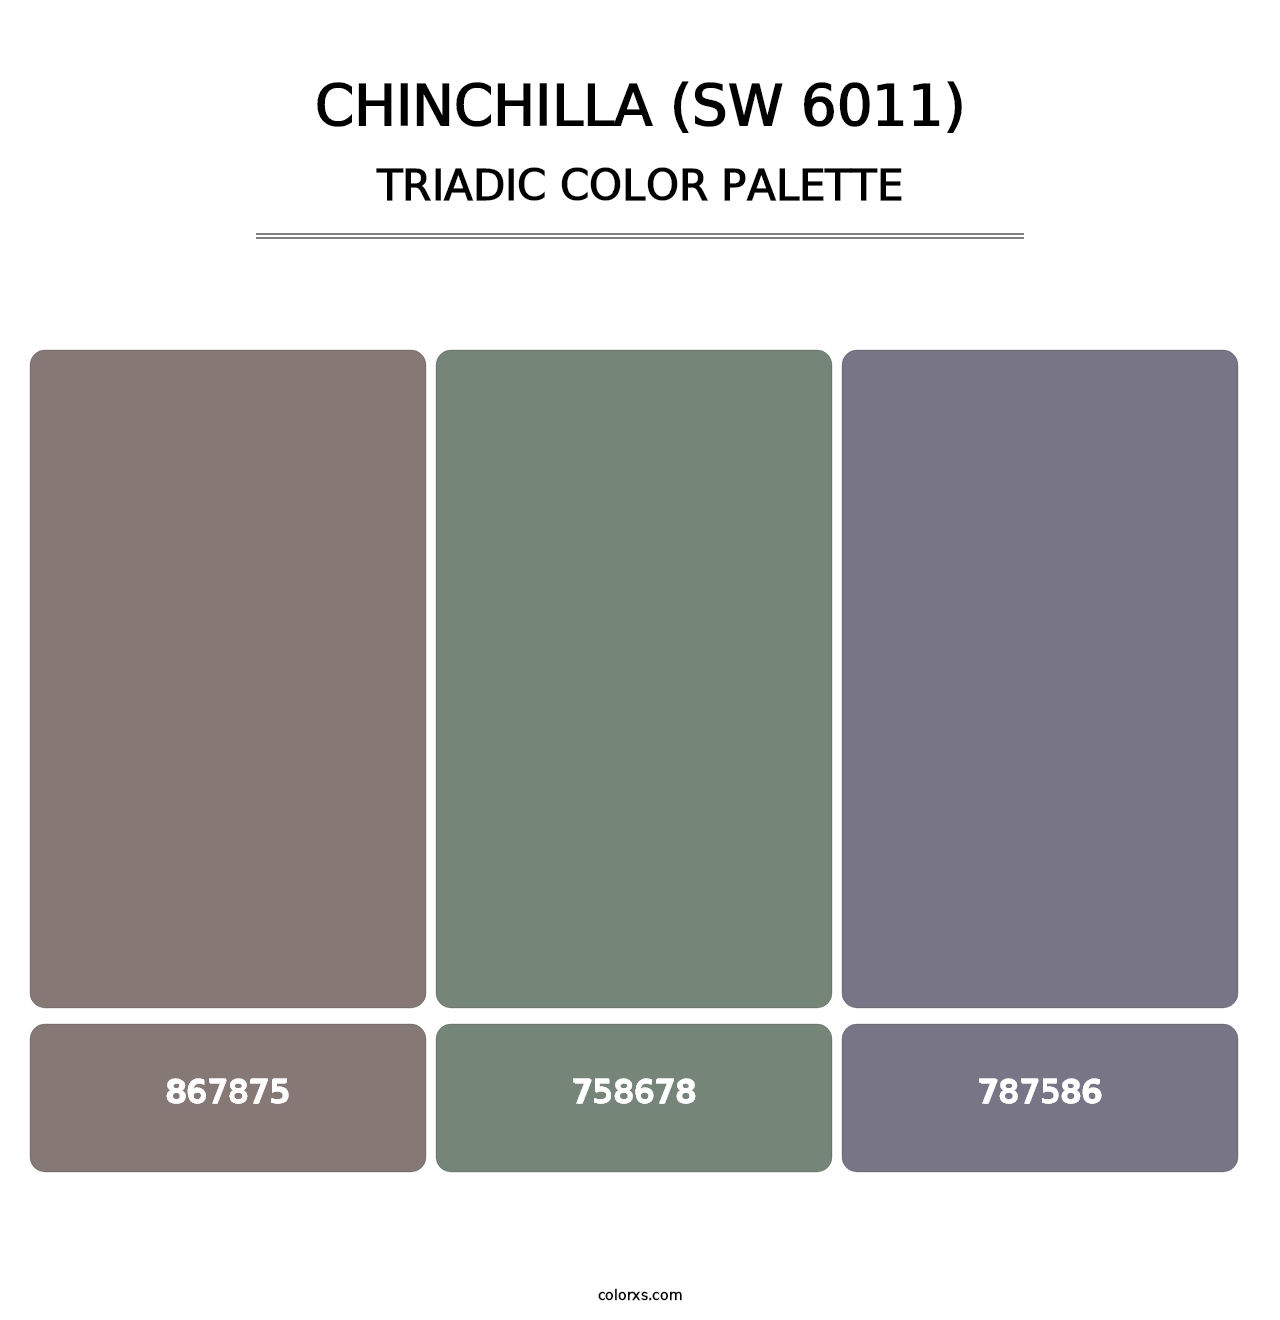 Chinchilla (SW 6011) - Triadic Color Palette